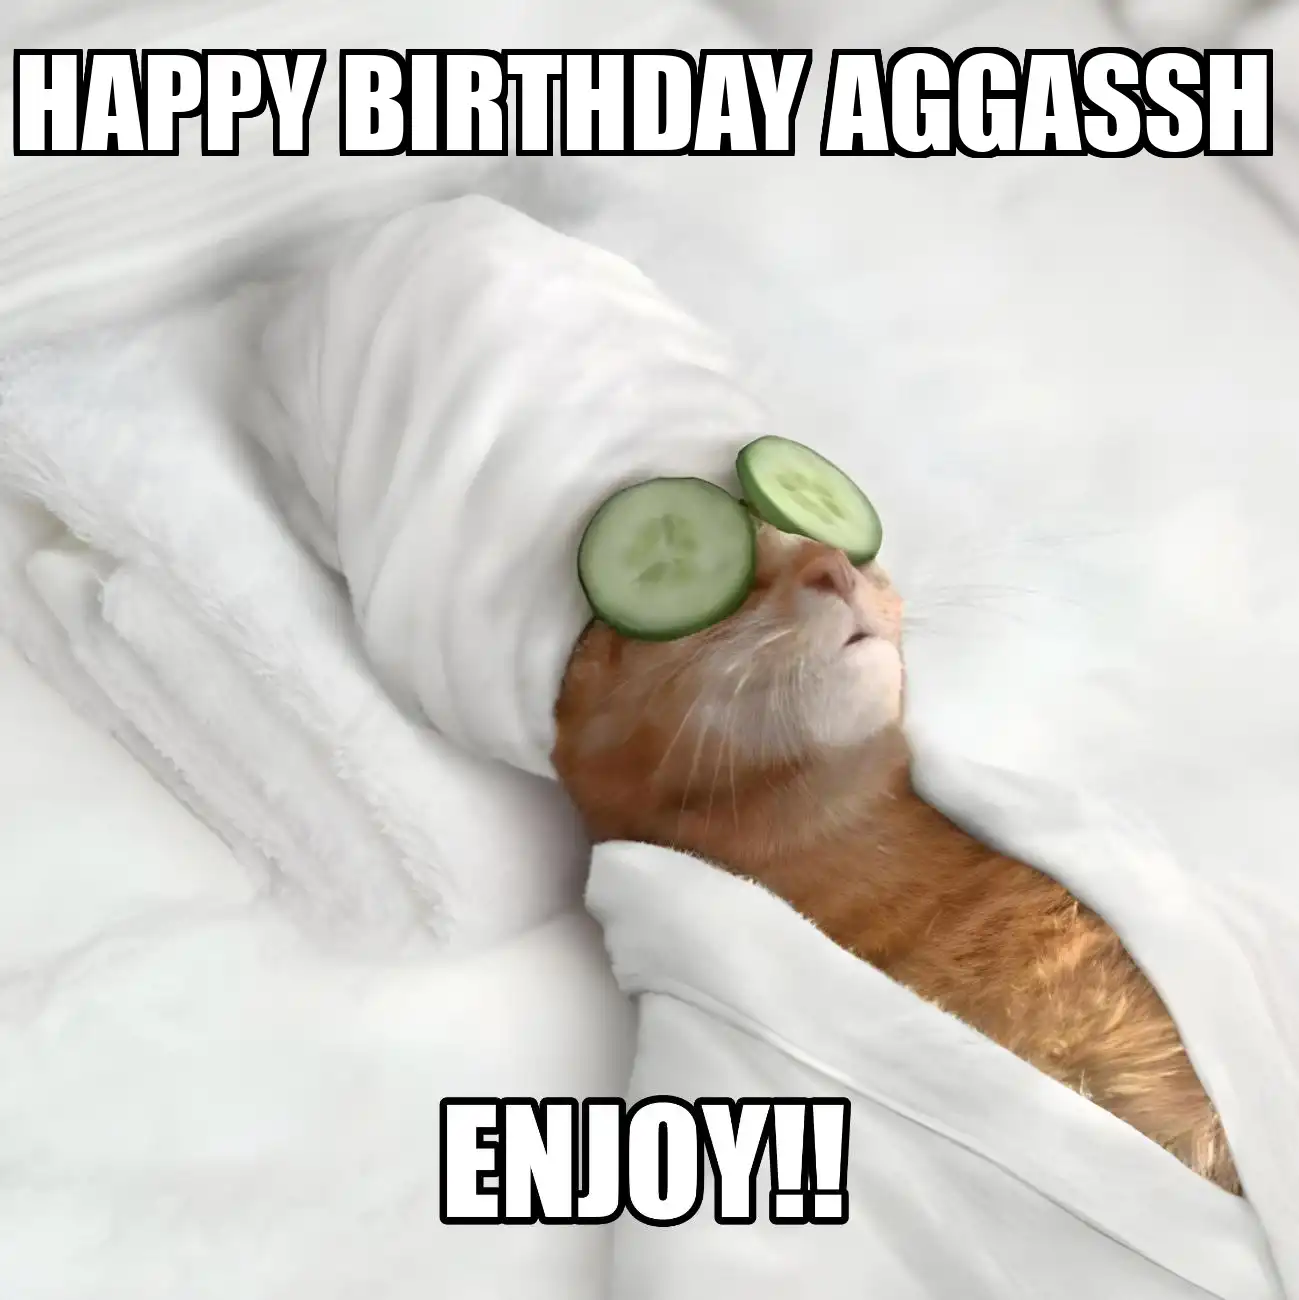 Happy Birthday Aggassh Enjoy Cat Meme